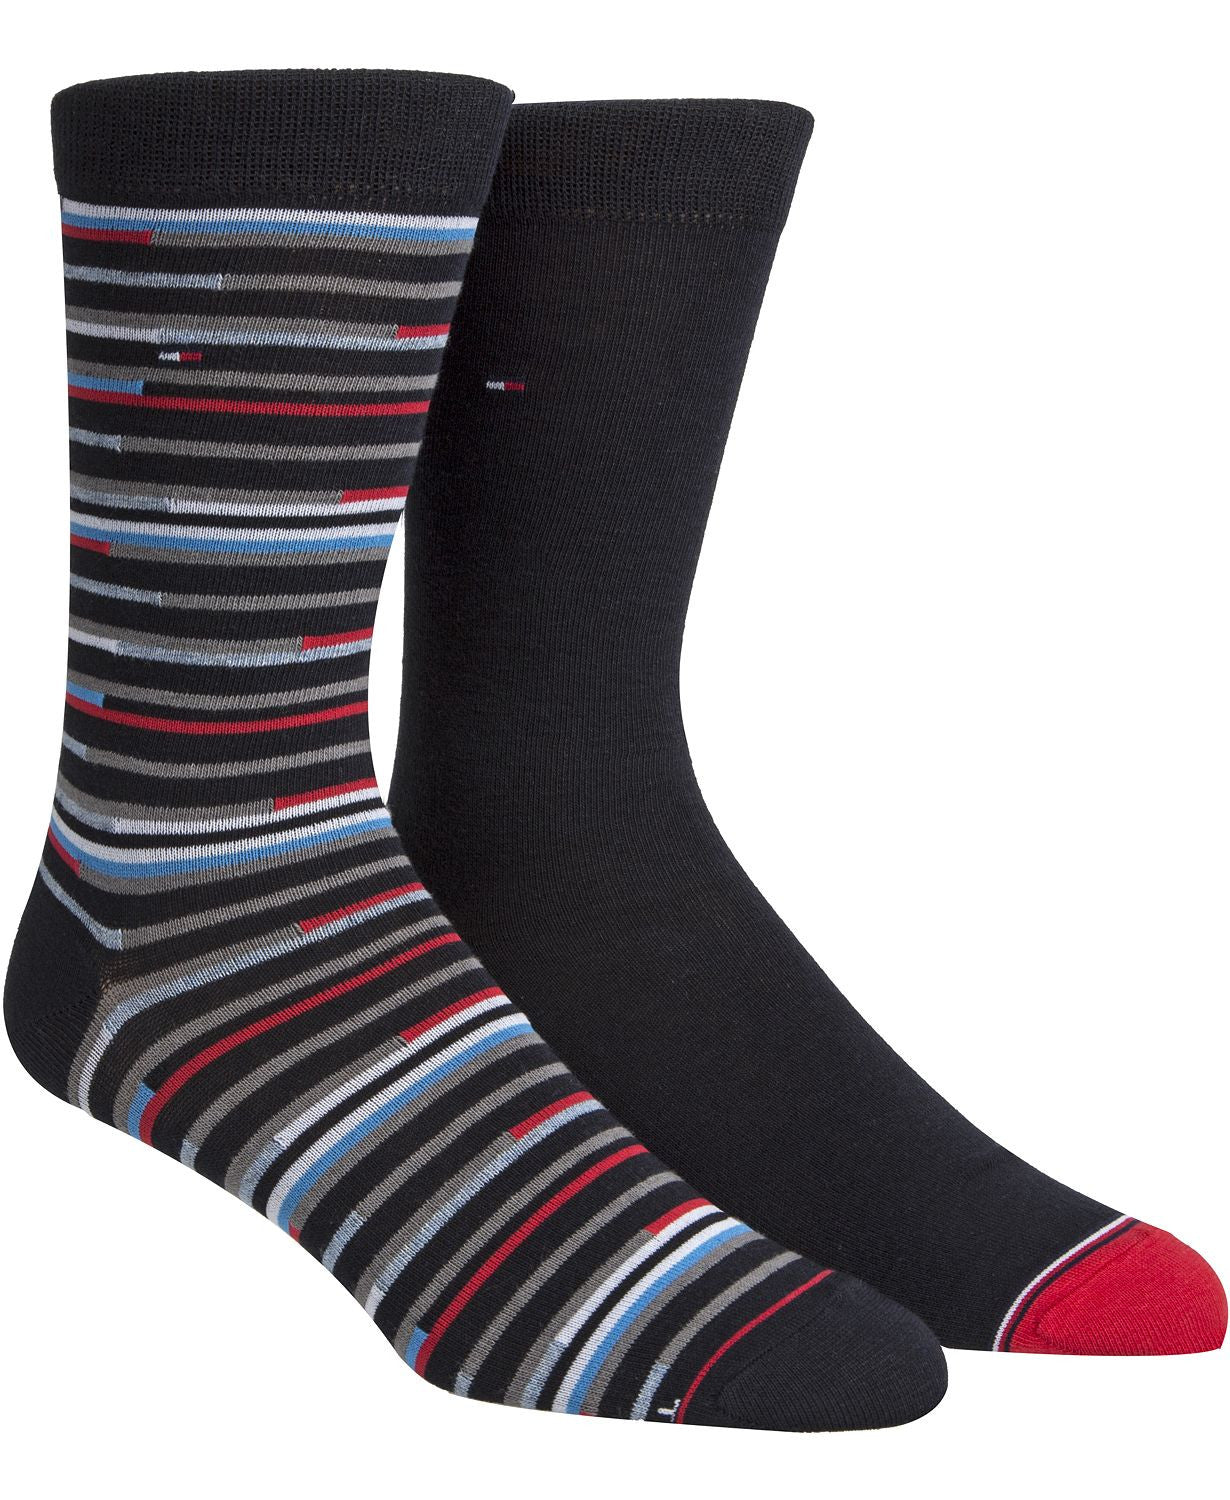 Tommy Hilfiger 2-pk. Striped Socks Navy